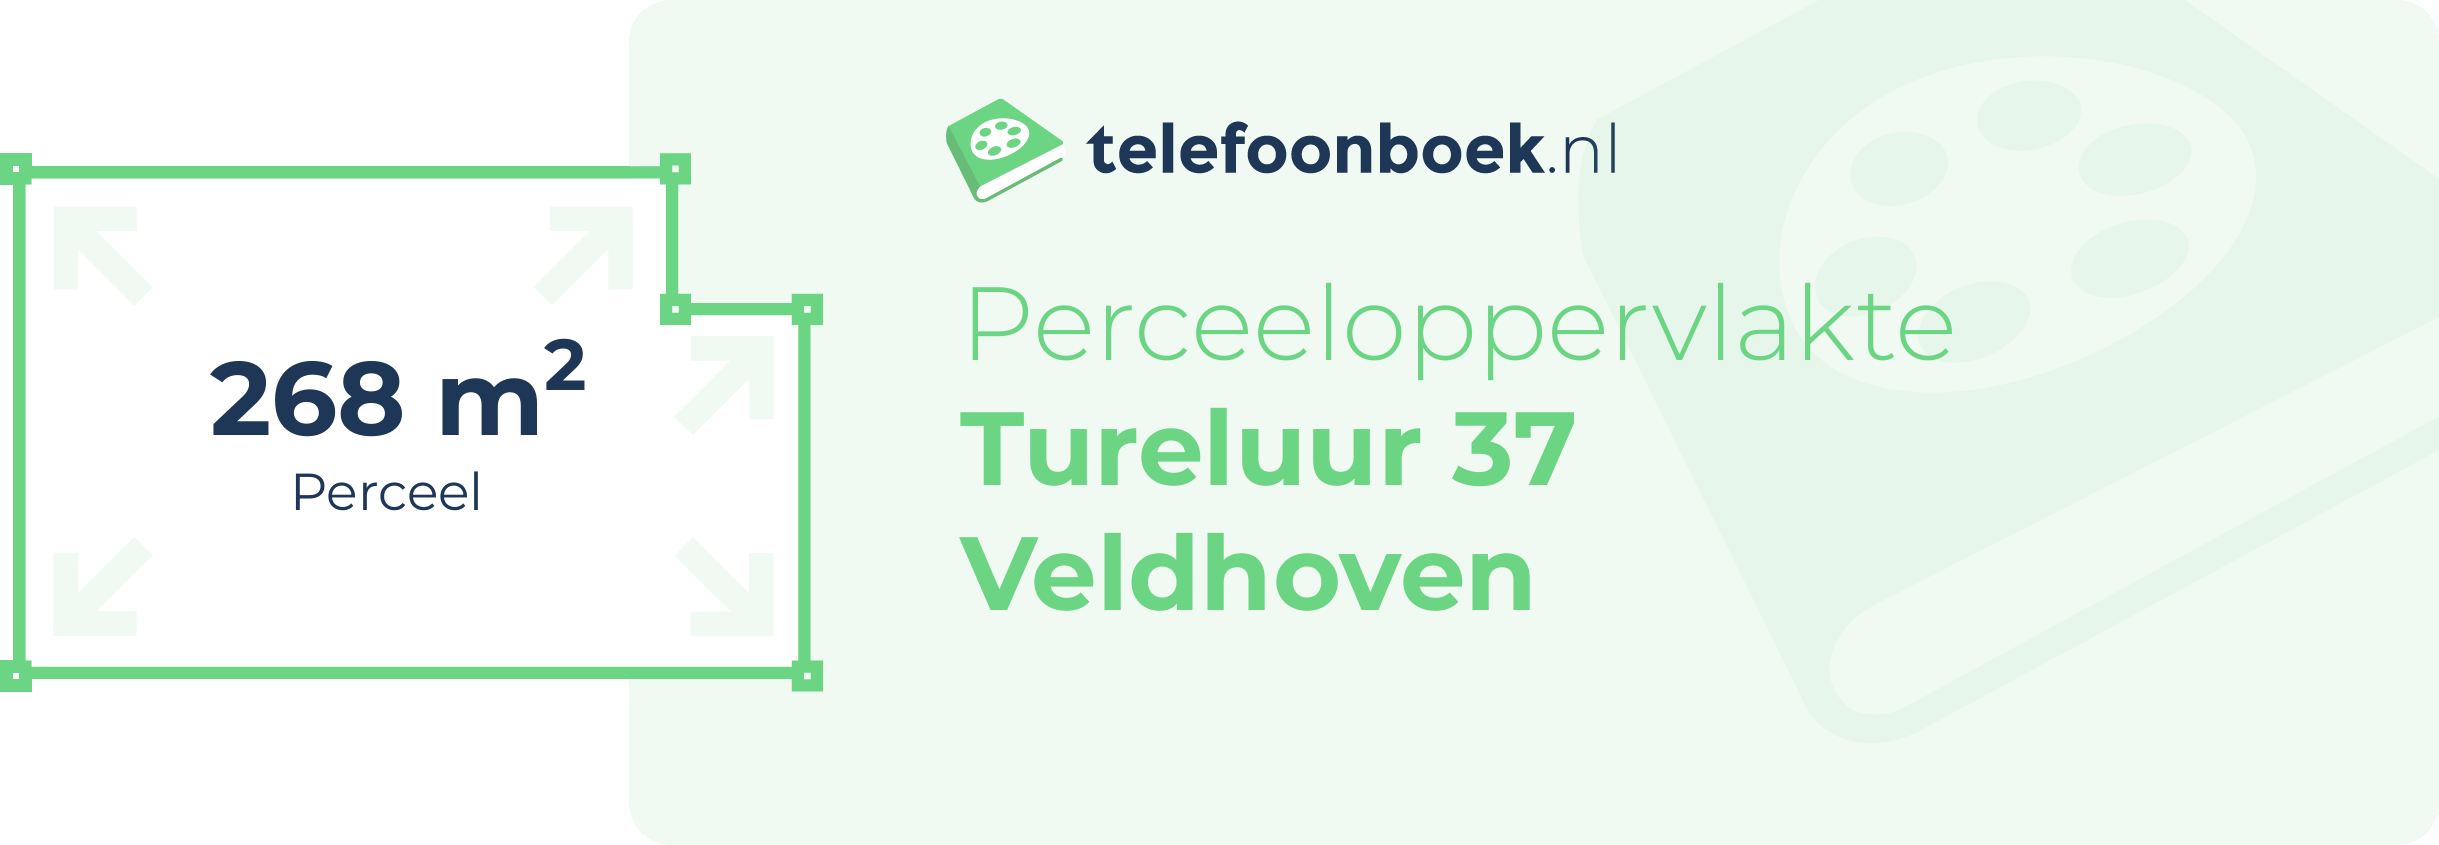 Perceeloppervlakte Tureluur 37 Veldhoven